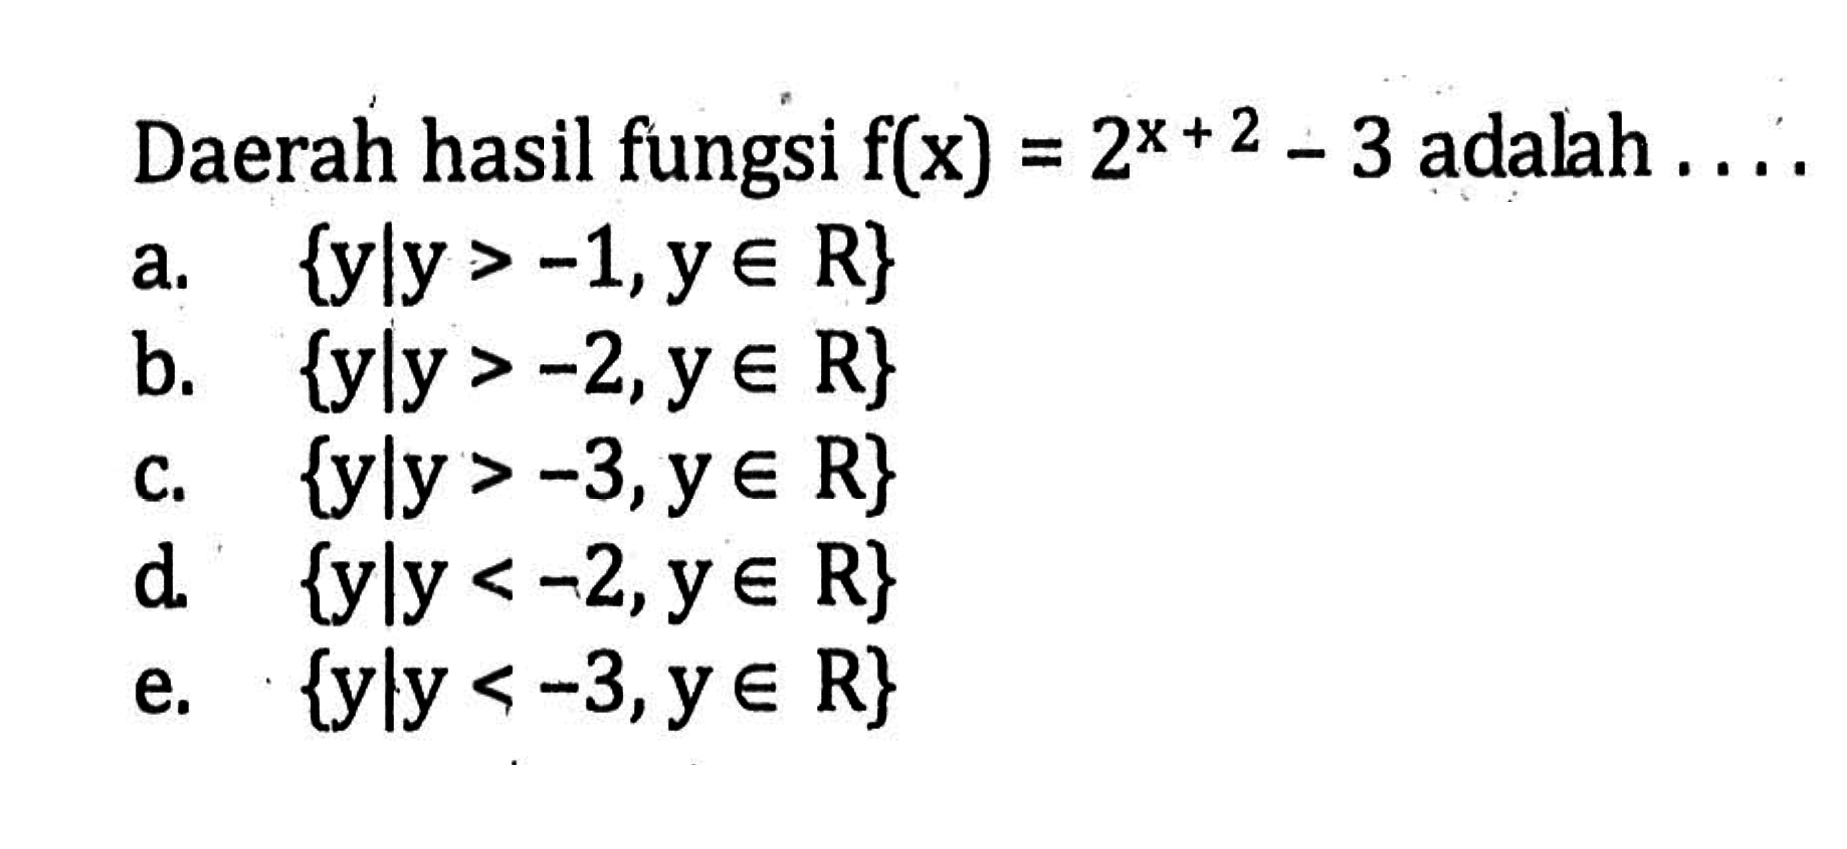 Daerah hasil fungsi f(x) = 2^(x+2) - 3 adalah... a. {y l y > -1,y E R} b. {y l y > -2,y E R} c. {yly > -3,y E R} d. {y l y < -2,y E R} e. {y l y < -3,y E R}